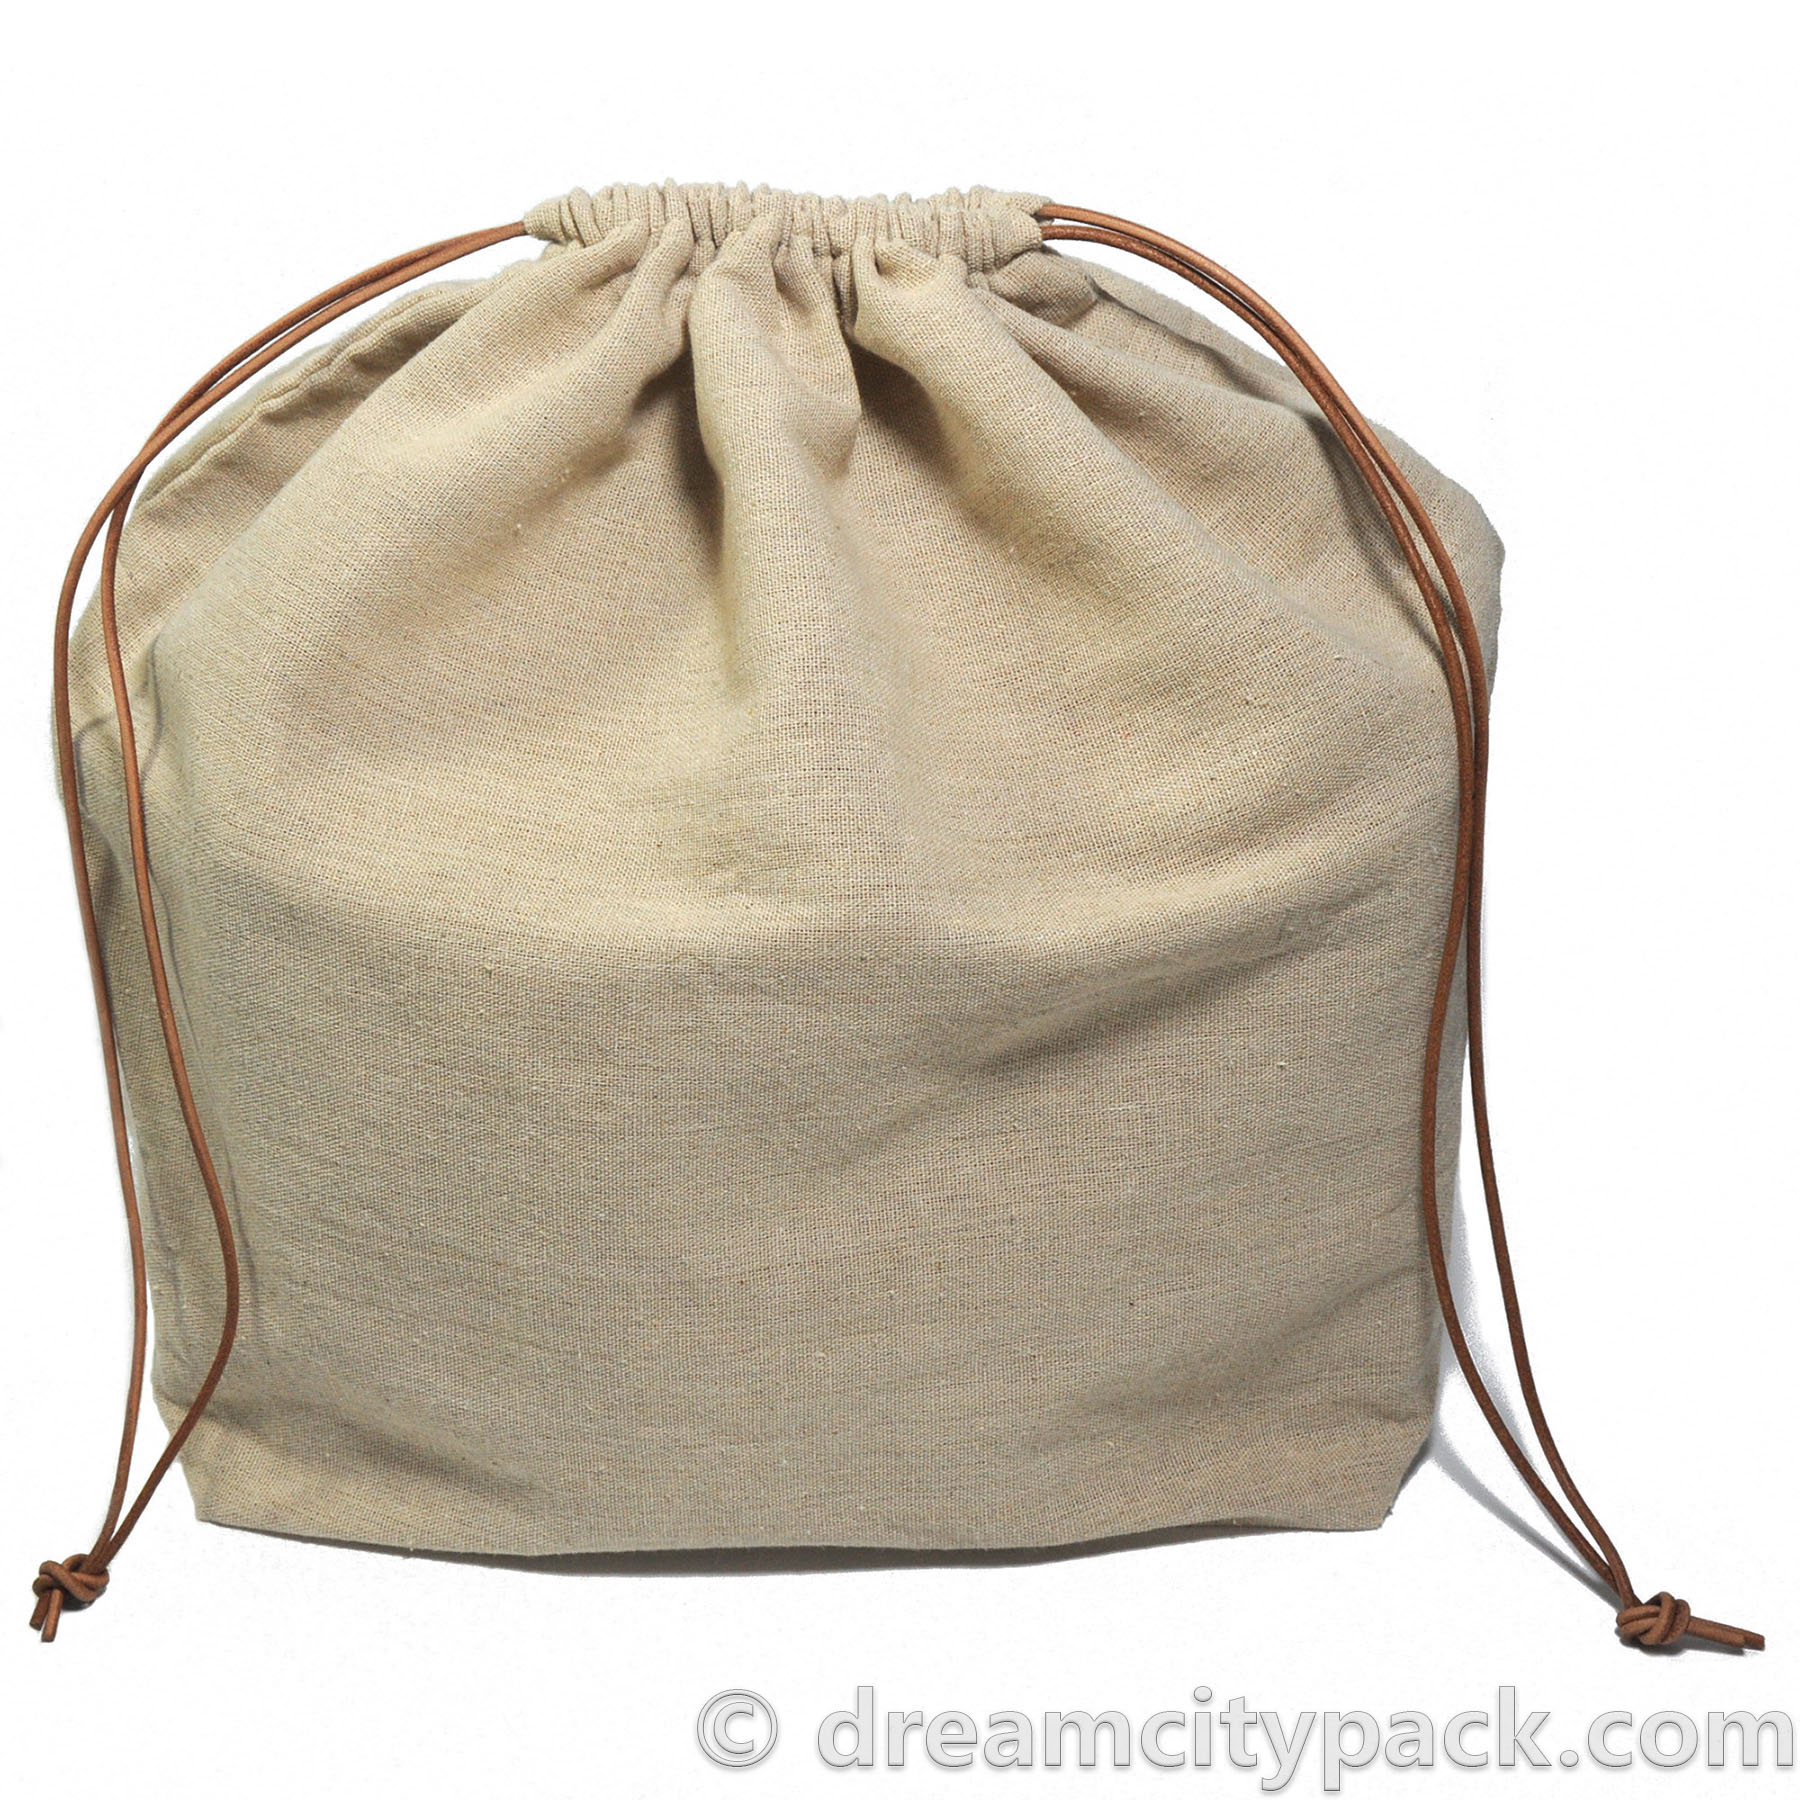 https://www.dreamcitypack.com/shoppic/large-linen-dust-bag-for-handbags-with-gusseted-bottom.jpg